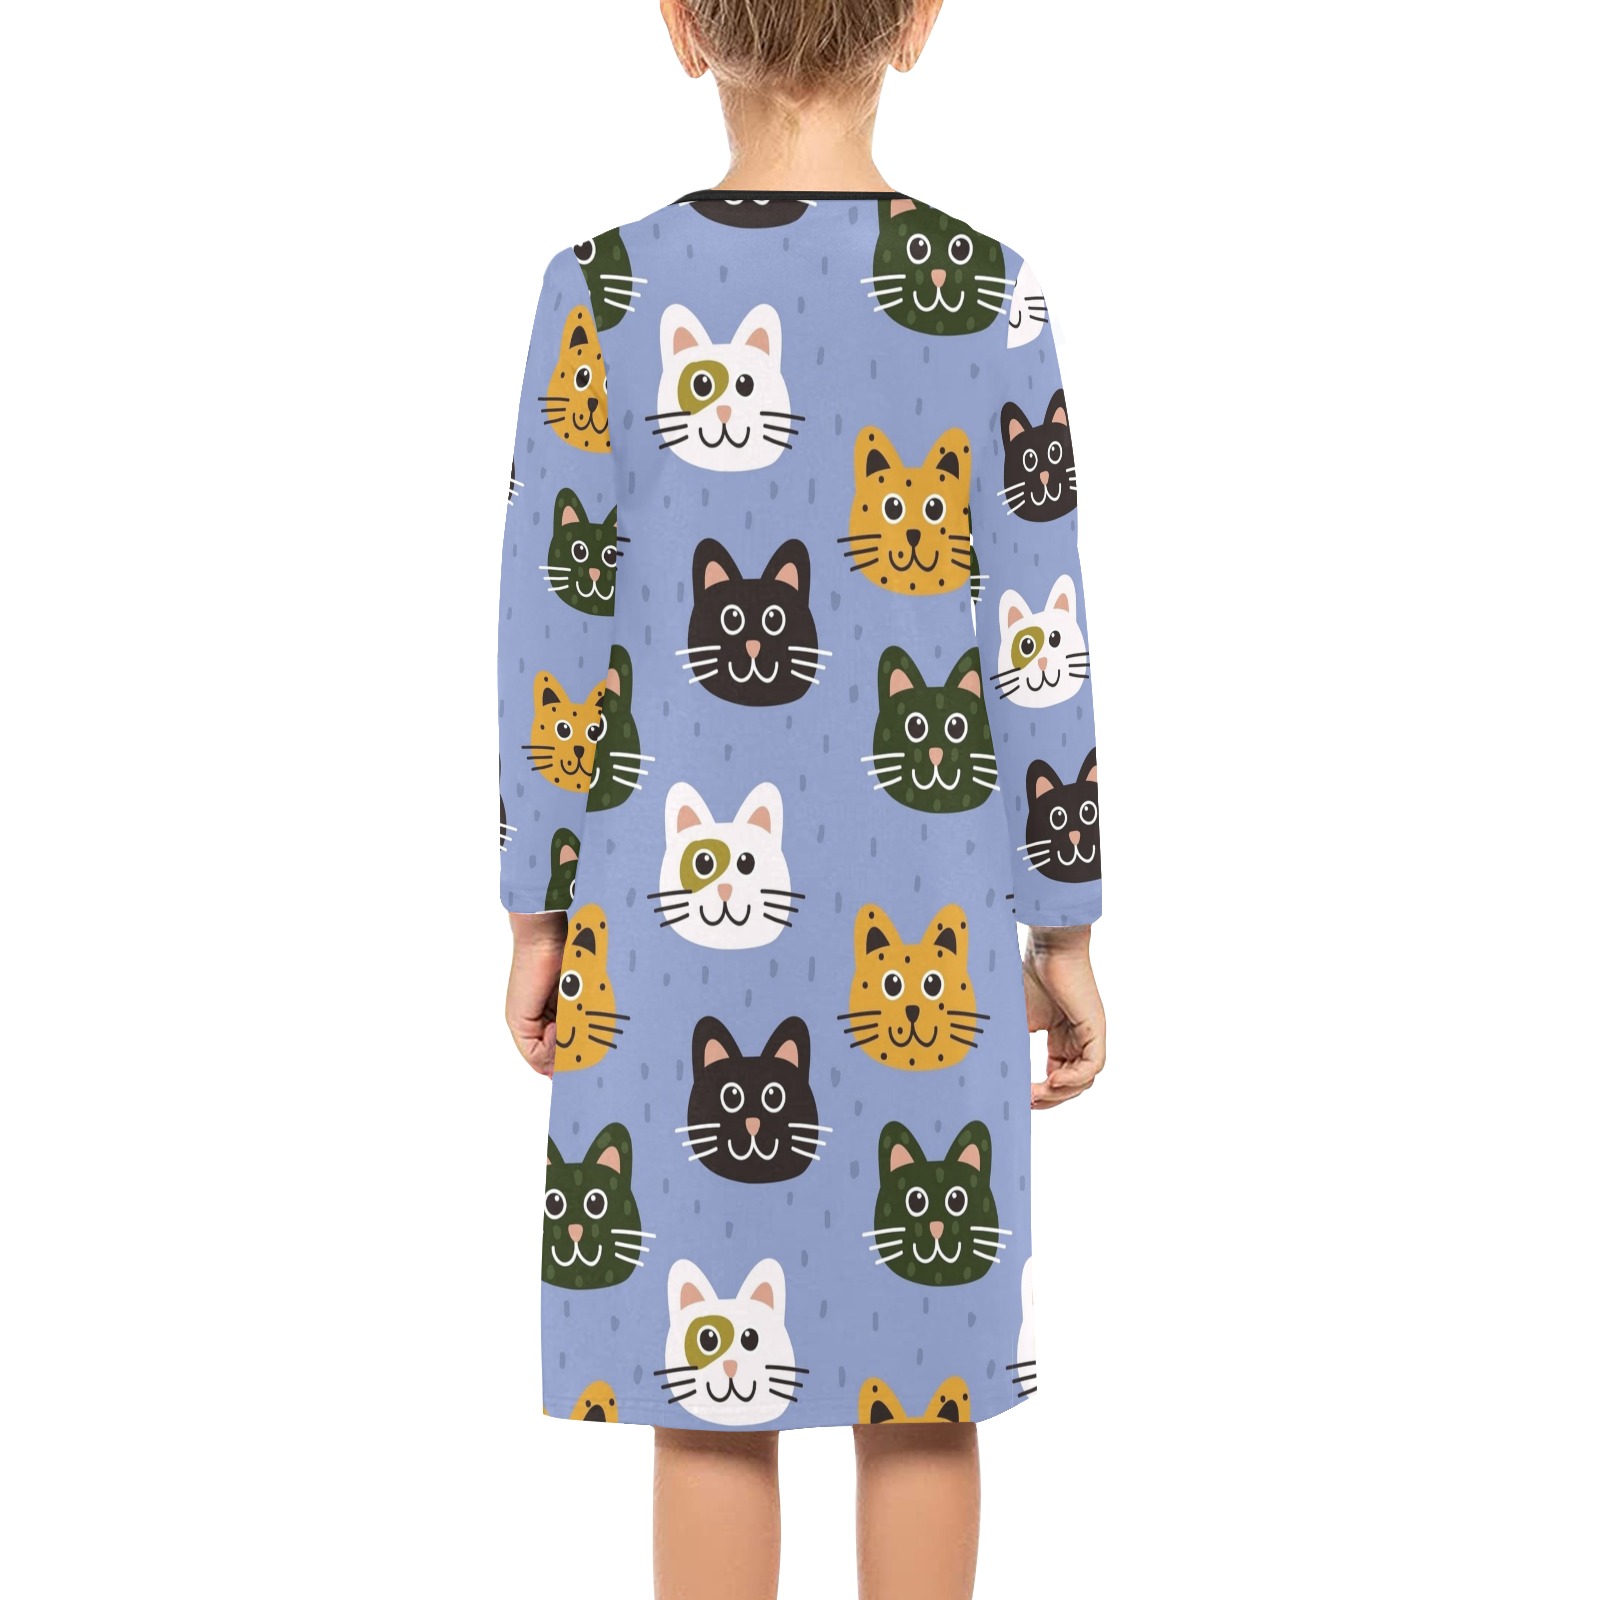 Adorable Cats Girls' Long Sleeve Dress (Model D59)